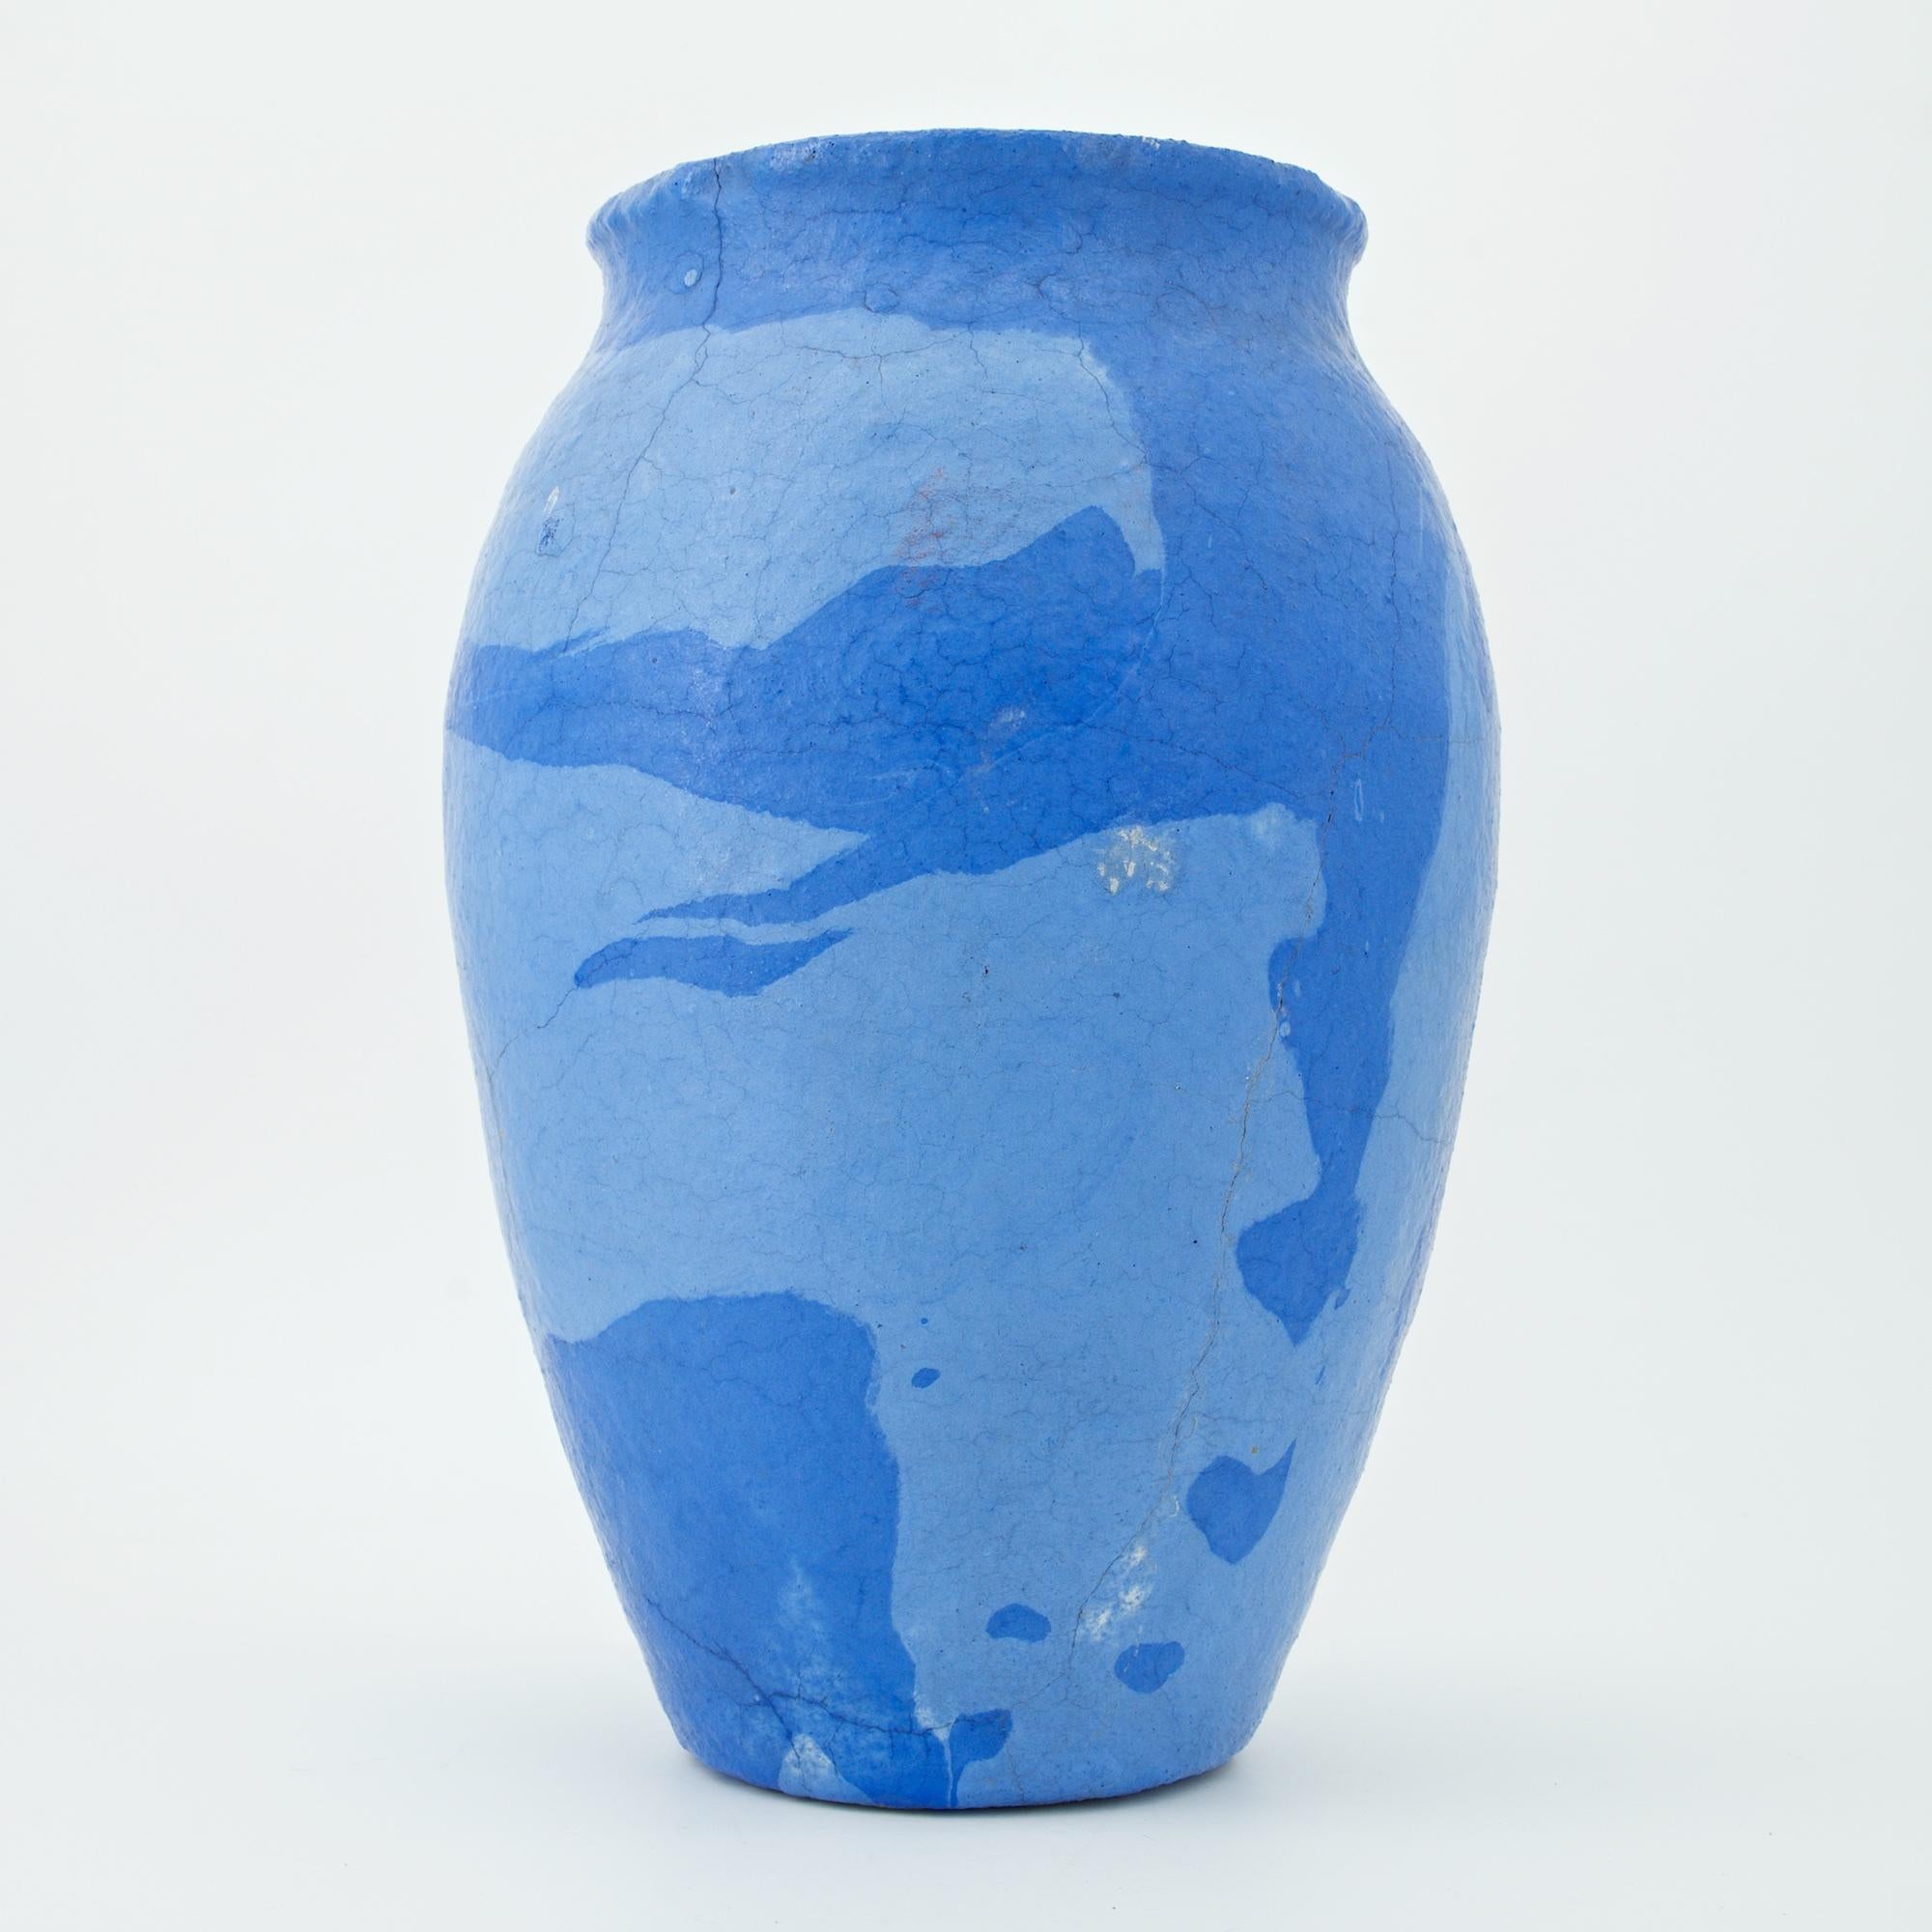 Vase der Ozark Pottery Company mit blauer und hellblauer gewirbelter Glasur. Als die Nachfrage nach Gebrauchsgegenständen nachließ, führten viele Töpfereien ihre Kunstlinie ein. Durch künstliches Einfärben des Tons und Drehen auf der Töpferscheibe